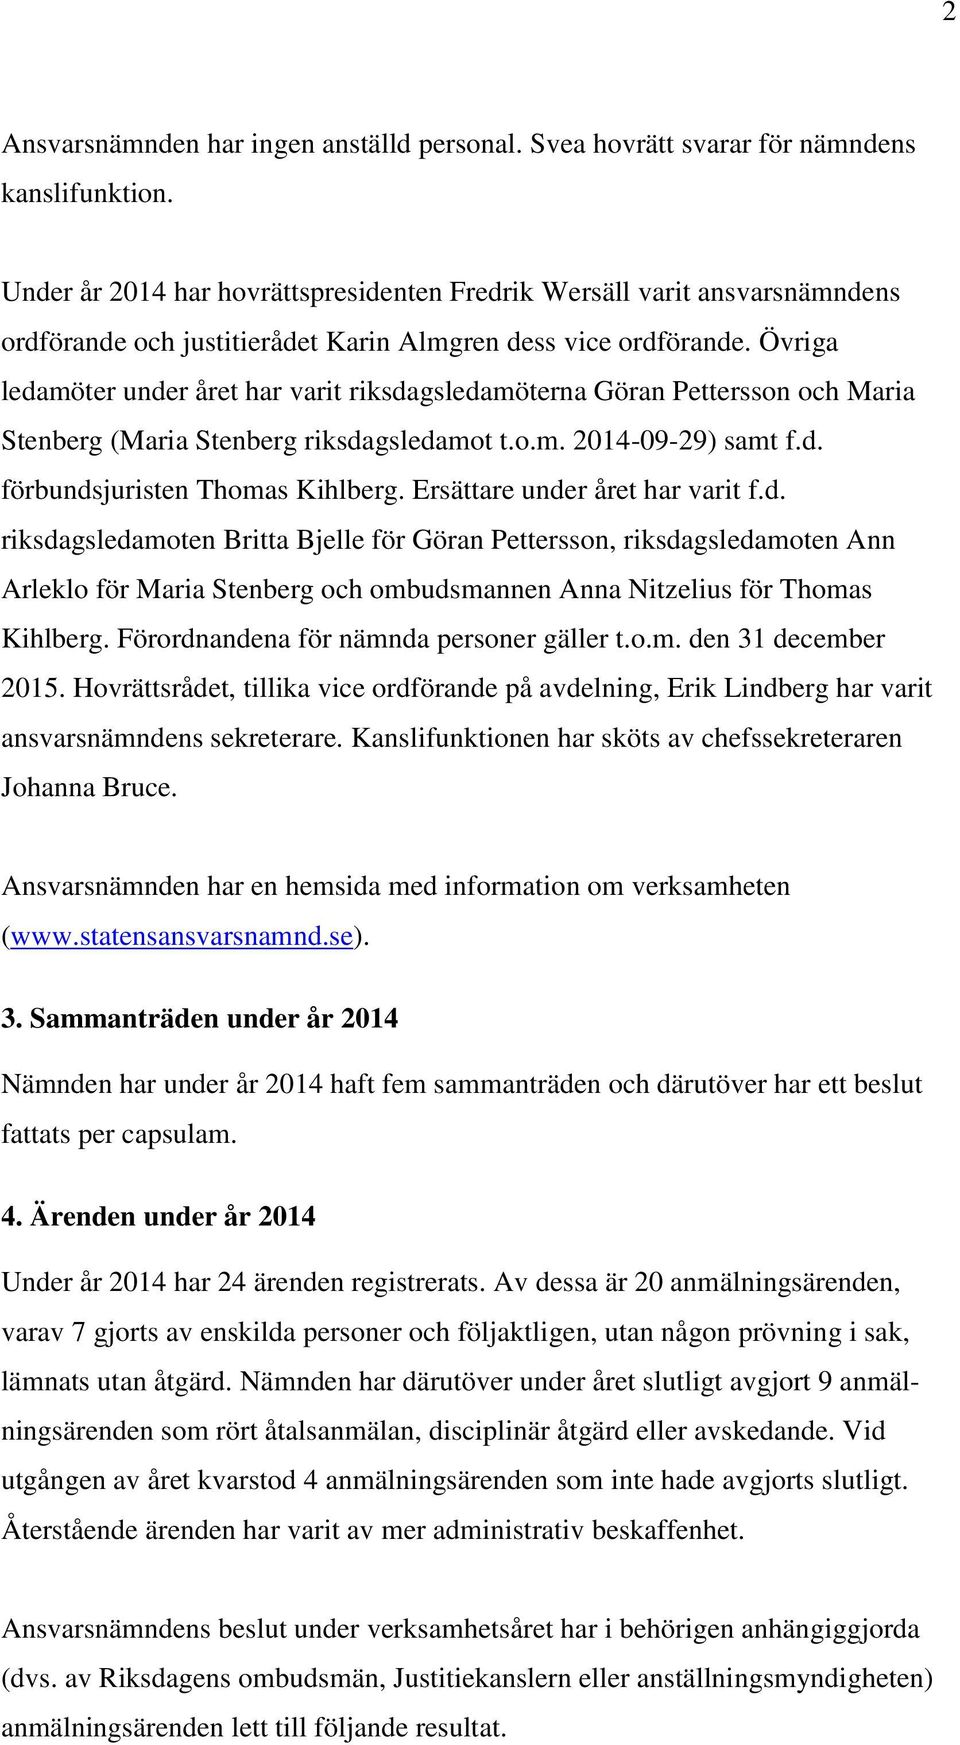 Övriga ledamöter under året har varit riksdagsledamöterna Göran Pettersson och Maria Stenberg (Maria Stenberg riksdagsledamot t.o.m. 2014-09-29) samt f.d. förbundsjuristen Thomas Kihlberg.